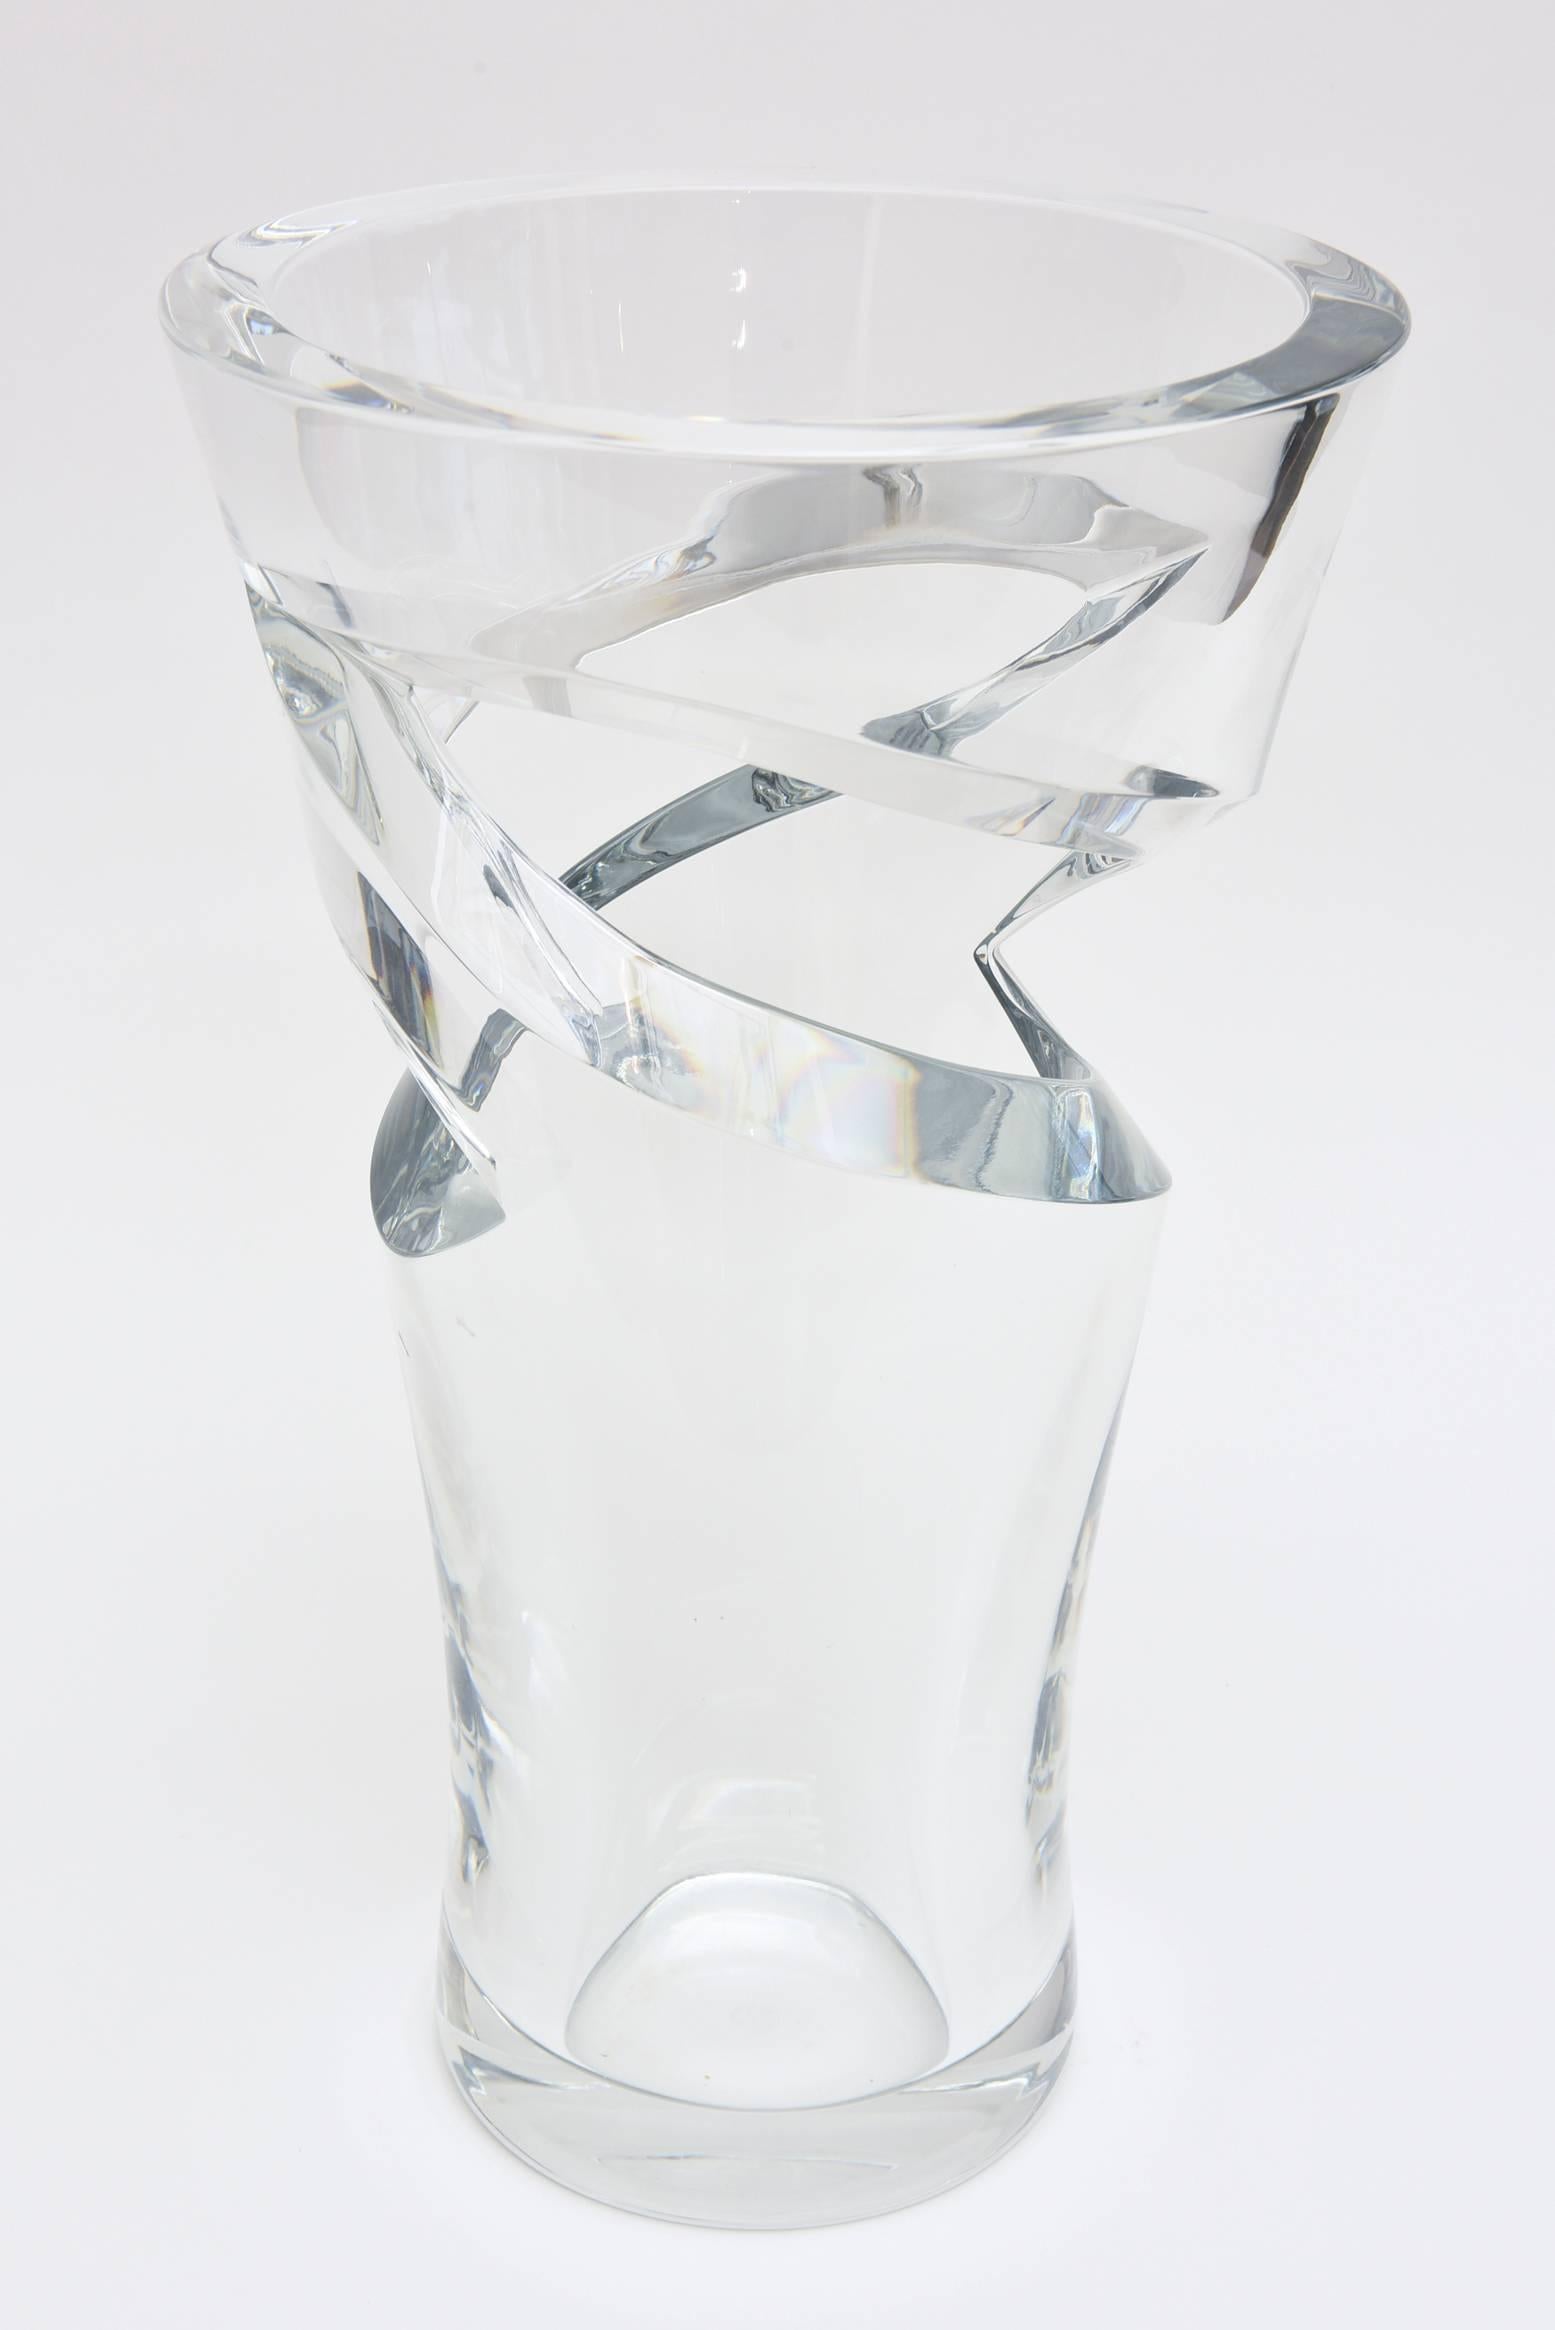 Sculptural Baccarat Monumental Crystal Modernist Vase 1